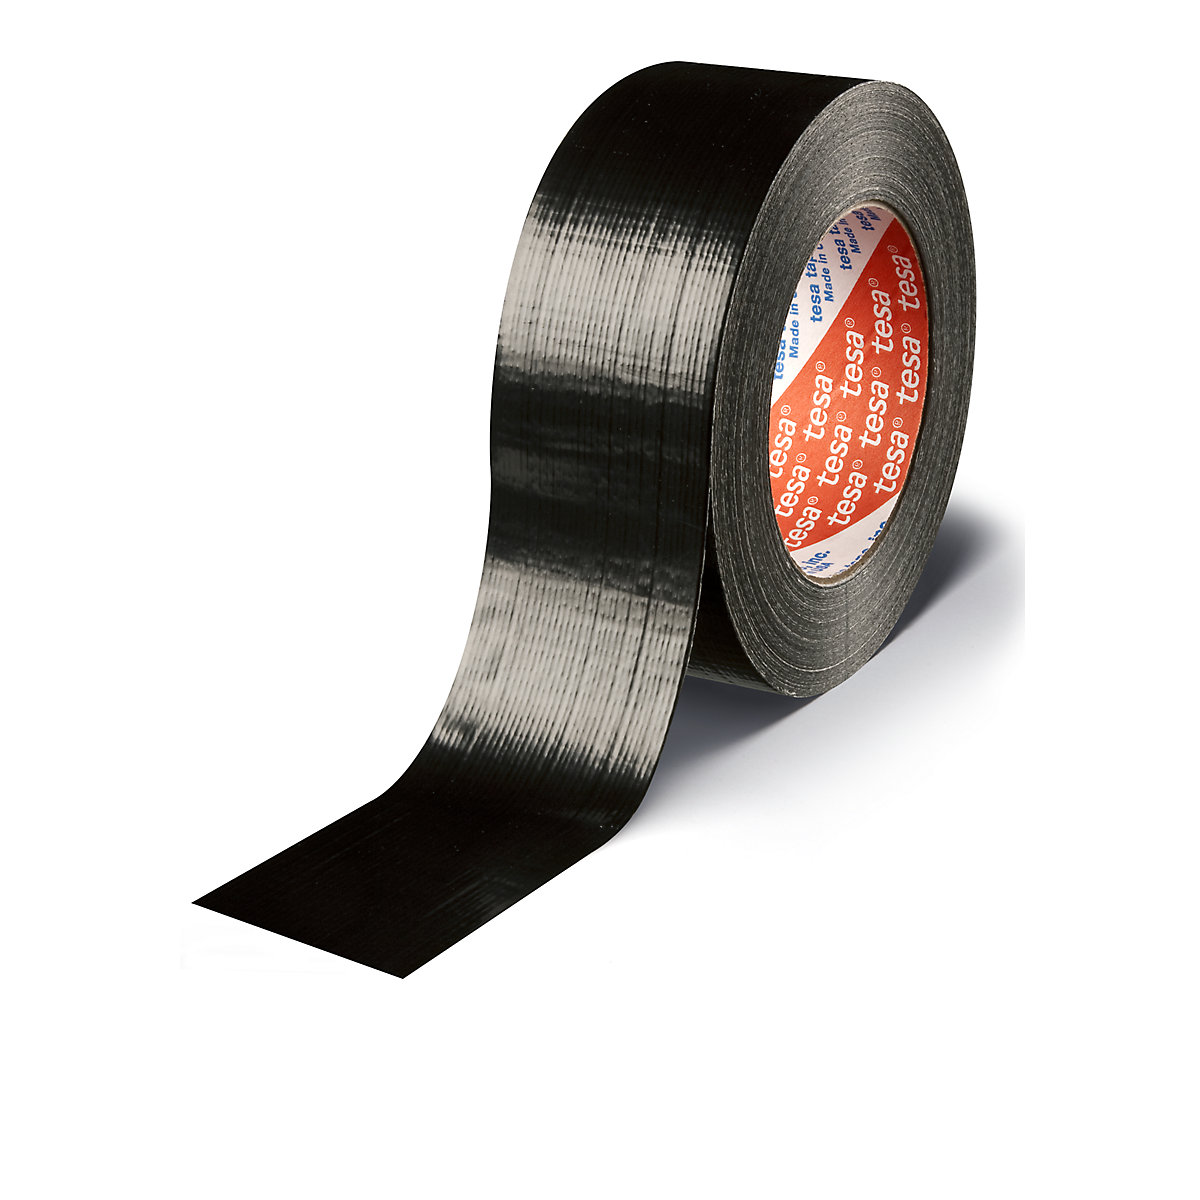 Bandă din țesătură – tesa, bandă adezivă rezistentă tesa® 4613 Standard, amb. 24 role, negru, lățime bandă 48 mm-1